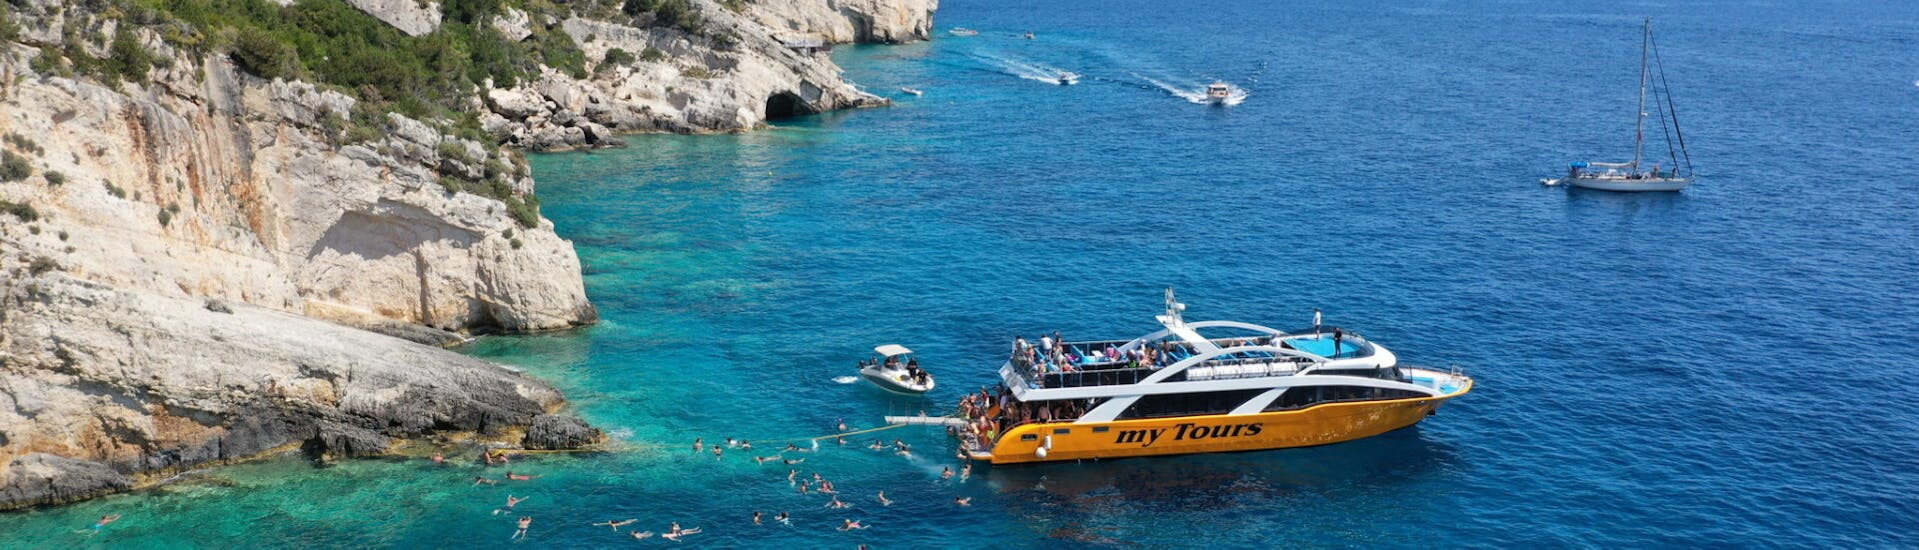 Un arrêt de baignade près de la côte de Zakynthos que My Tours effectue lors de l'excursion en bateau vers la plage de Navagio et les grottes bleues.